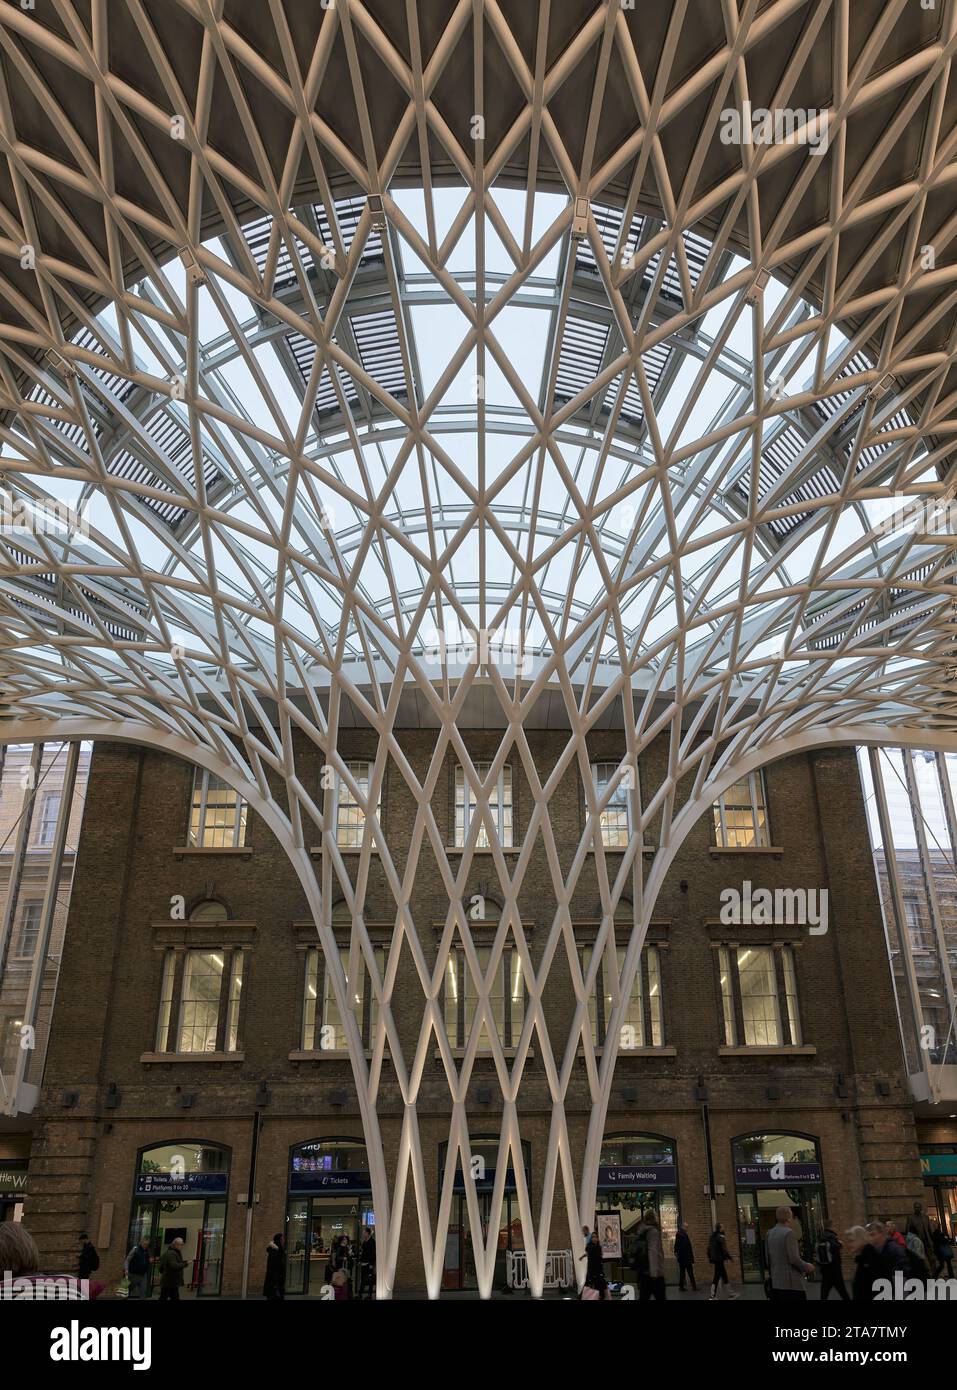 Le plafond à motifs complexes au-dessus du hall principal de la gare de King's Cross, Londres, Angleterre. Banque D'Images